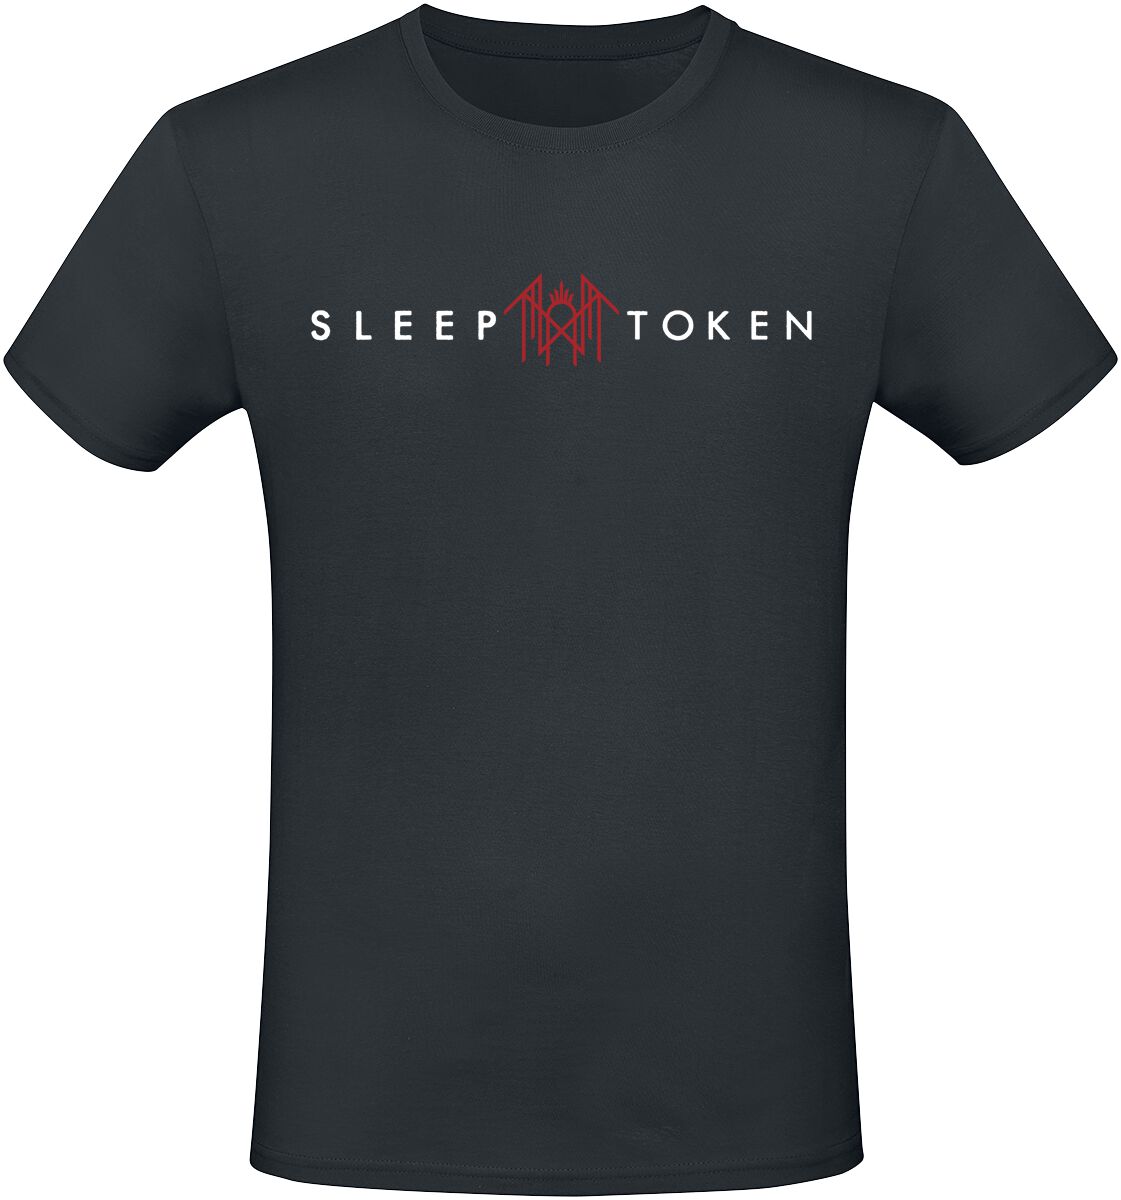 Sleep Token T-Shirt - Staff - S bis 4XL - für Männer - Größe XXL - schwarz  - EMP exklusives Merchandise!